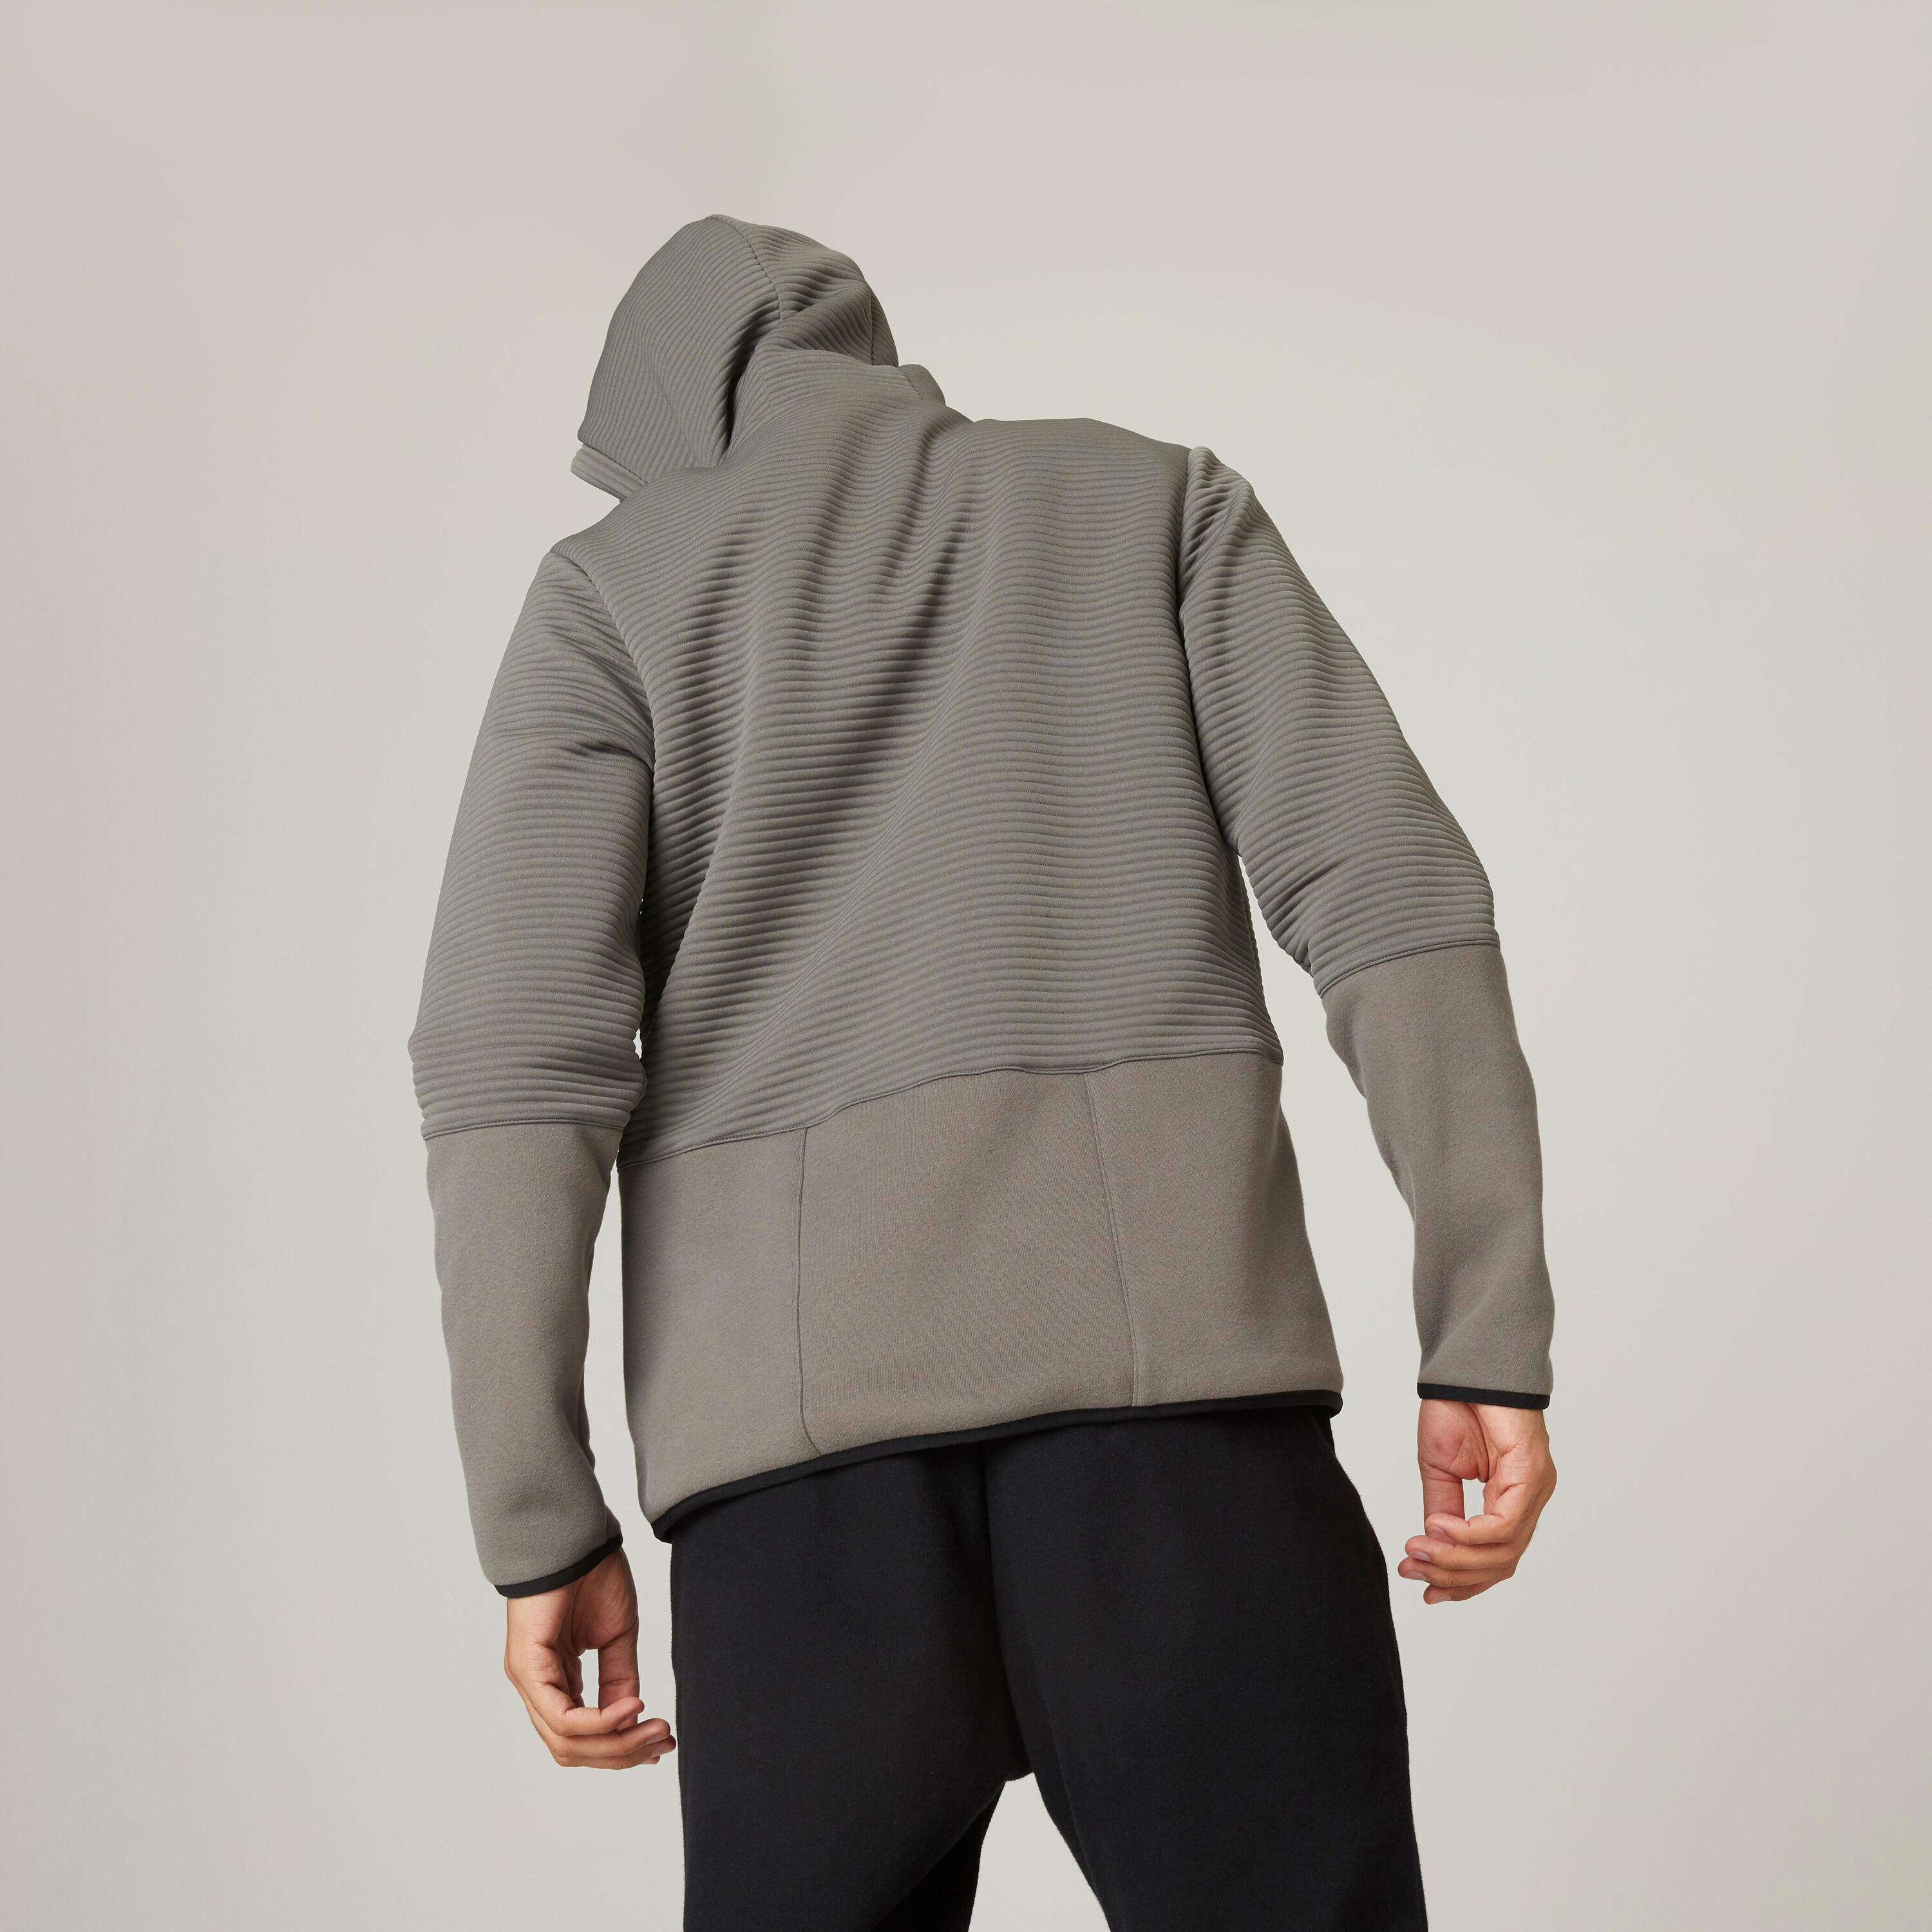 Men's Zip-Up Fitness Hoodie 560 - Grey/Khaki 2/11